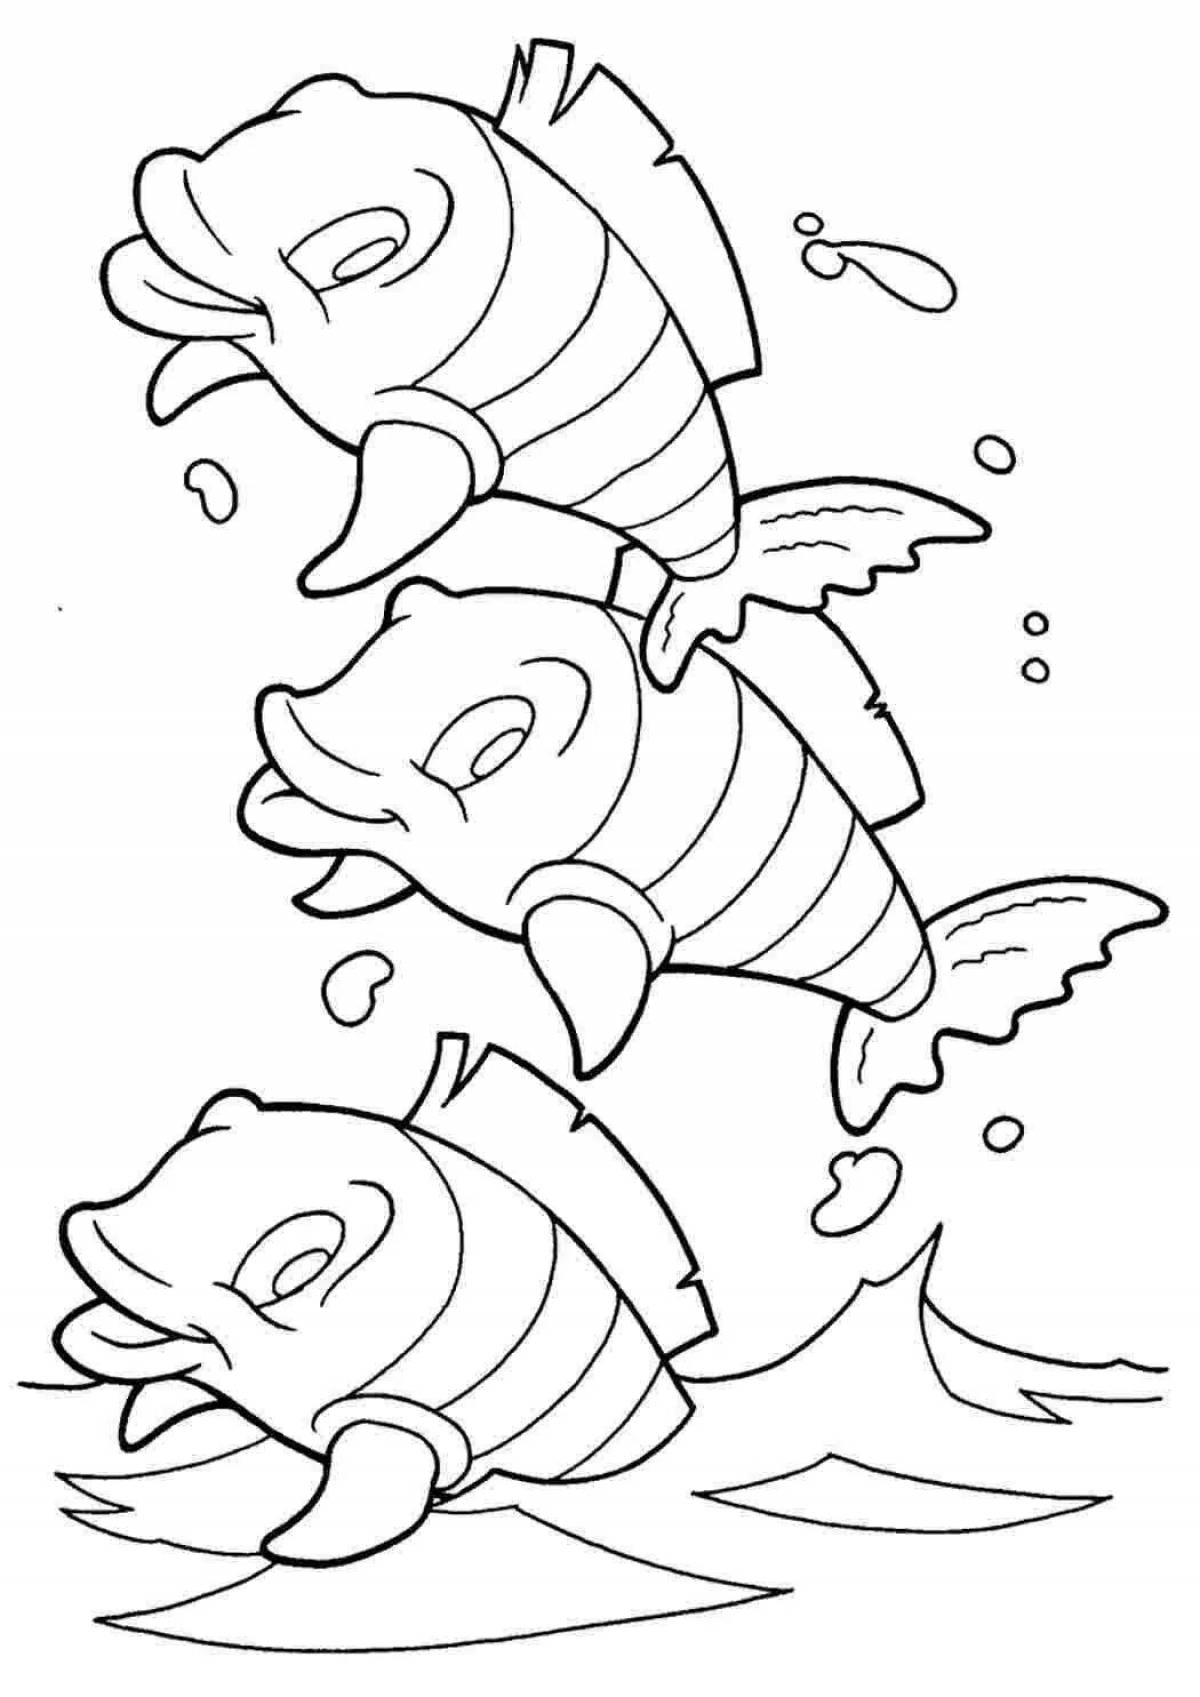 Раскраски рыбки для детей 3 4 лет. Раскраска рыбка. Рыбка раскраска для детей. Морские рыбы раскраска для детей. Раскраска рыбки в море.